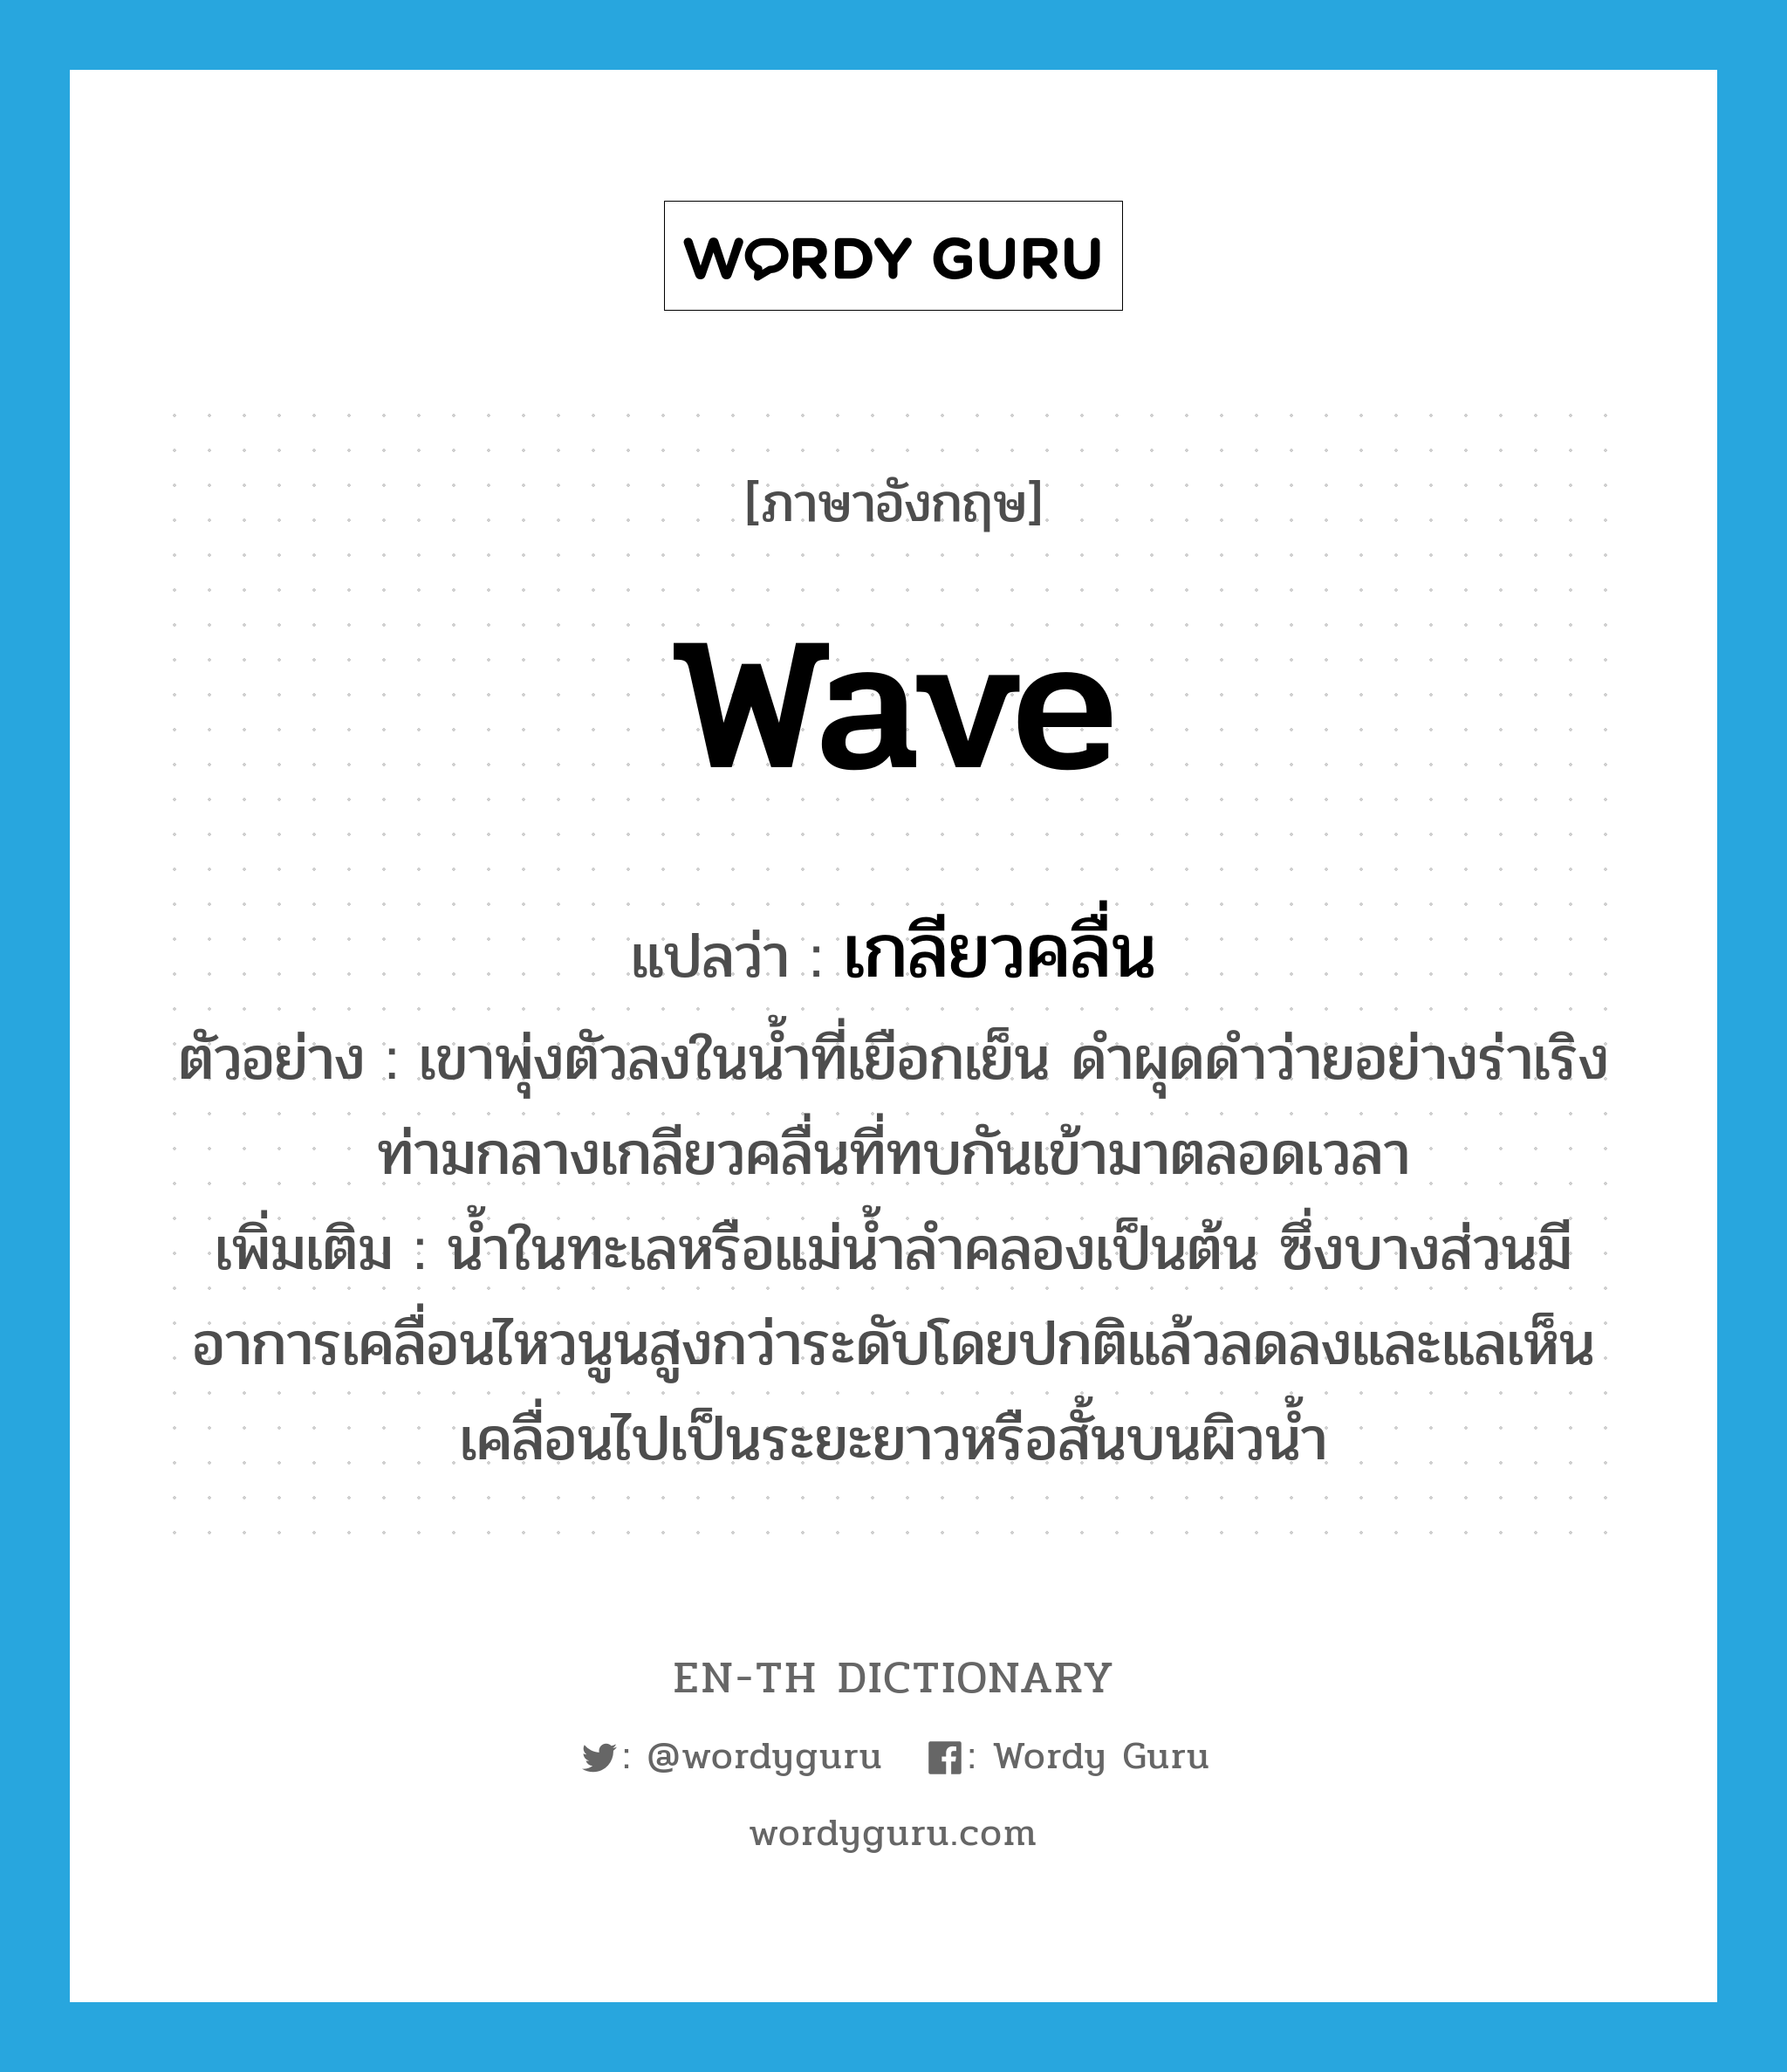 wave แปลว่า?, คำศัพท์ภาษาอังกฤษ wave แปลว่า เกลียวคลื่น ประเภท N ตัวอย่าง เขาพุ่งตัวลงในน้ำที่เยือกเย็น ดำผุดดำว่ายอย่างร่าเริง ท่ามกลางเกลียวคลื่นที่ทบกันเข้ามาตลอดเวลา เพิ่มเติม น้ำในทะเลหรือแม่น้ำลำคลองเป็นต้น ซึ่งบางส่วนมีอาการเคลื่อนไหวนูนสูงกว่าระดับโดยปกติแล้วลดลงและแลเห็นเคลื่อนไปเป็นระยะยาวหรือสั้นบนผิวน้ำ หมวด N